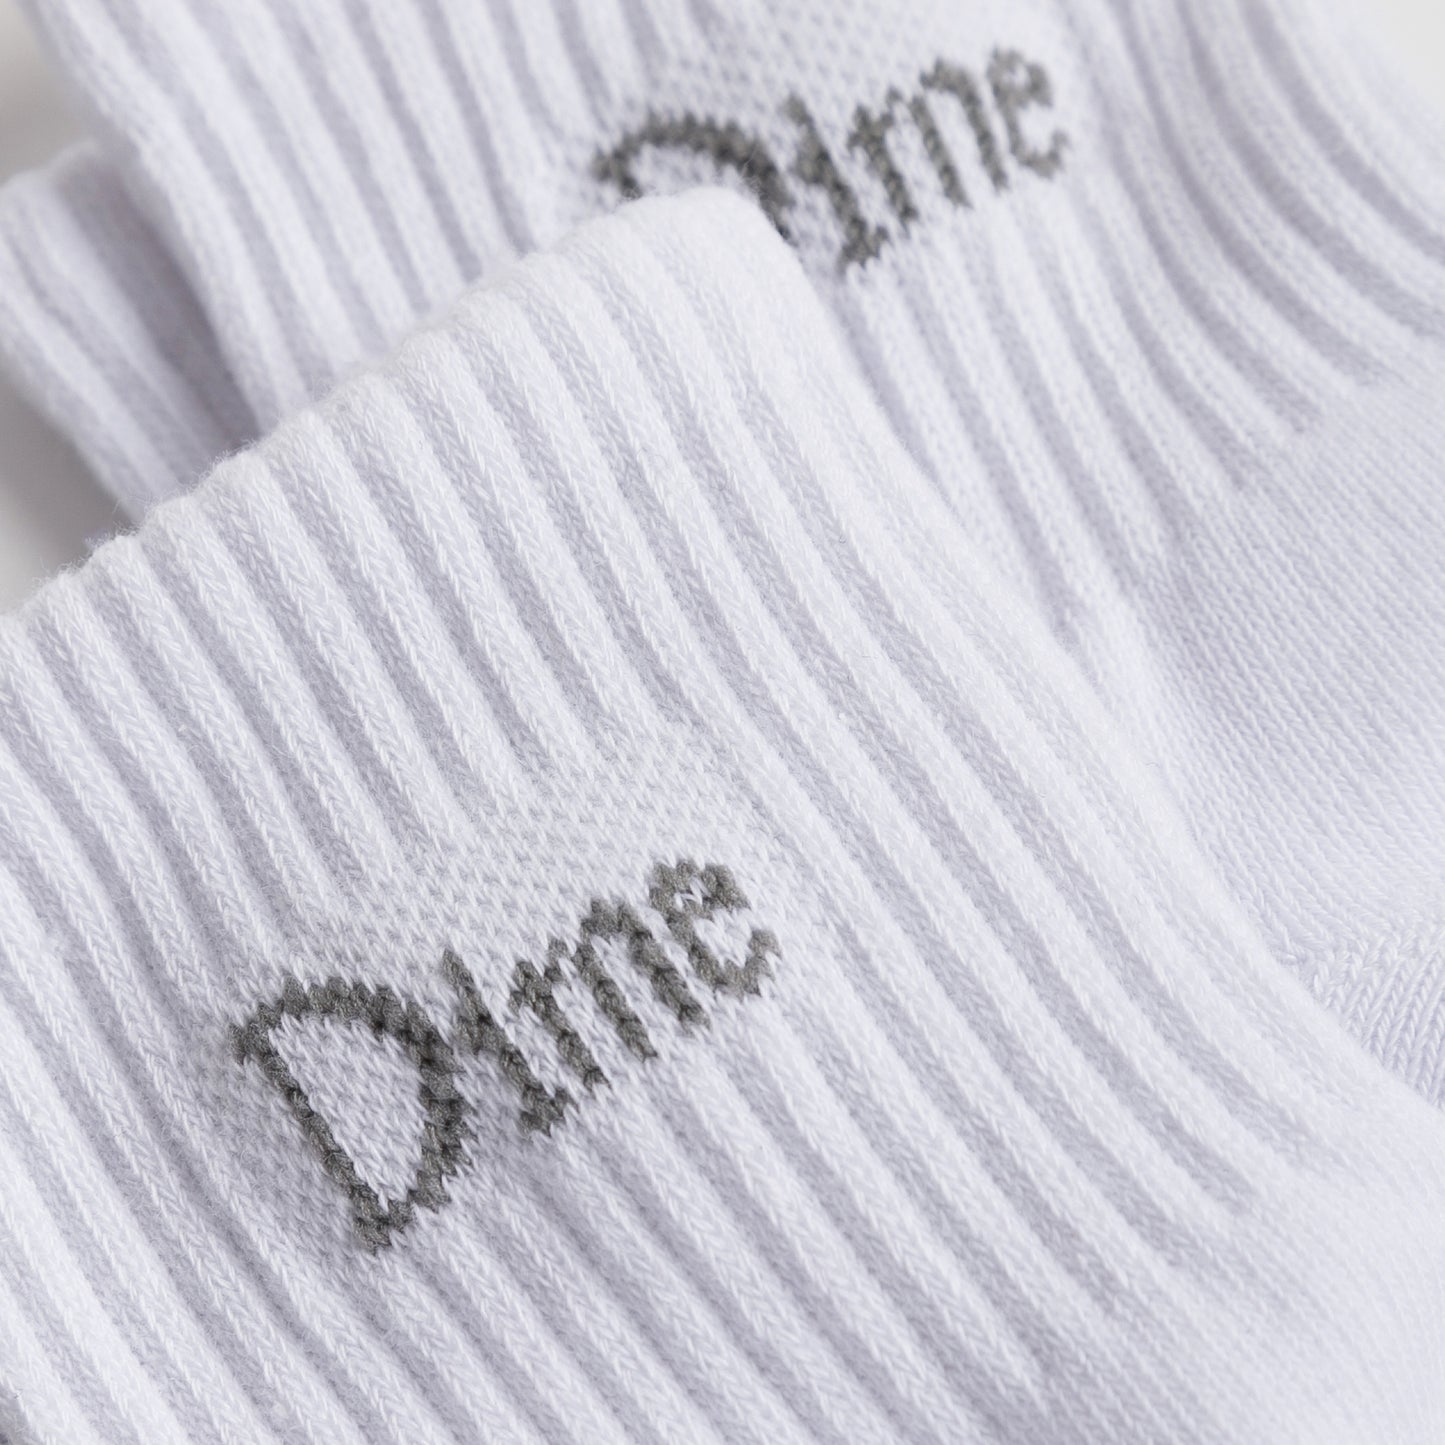 Dime - Classic 2 Pack Socks - White